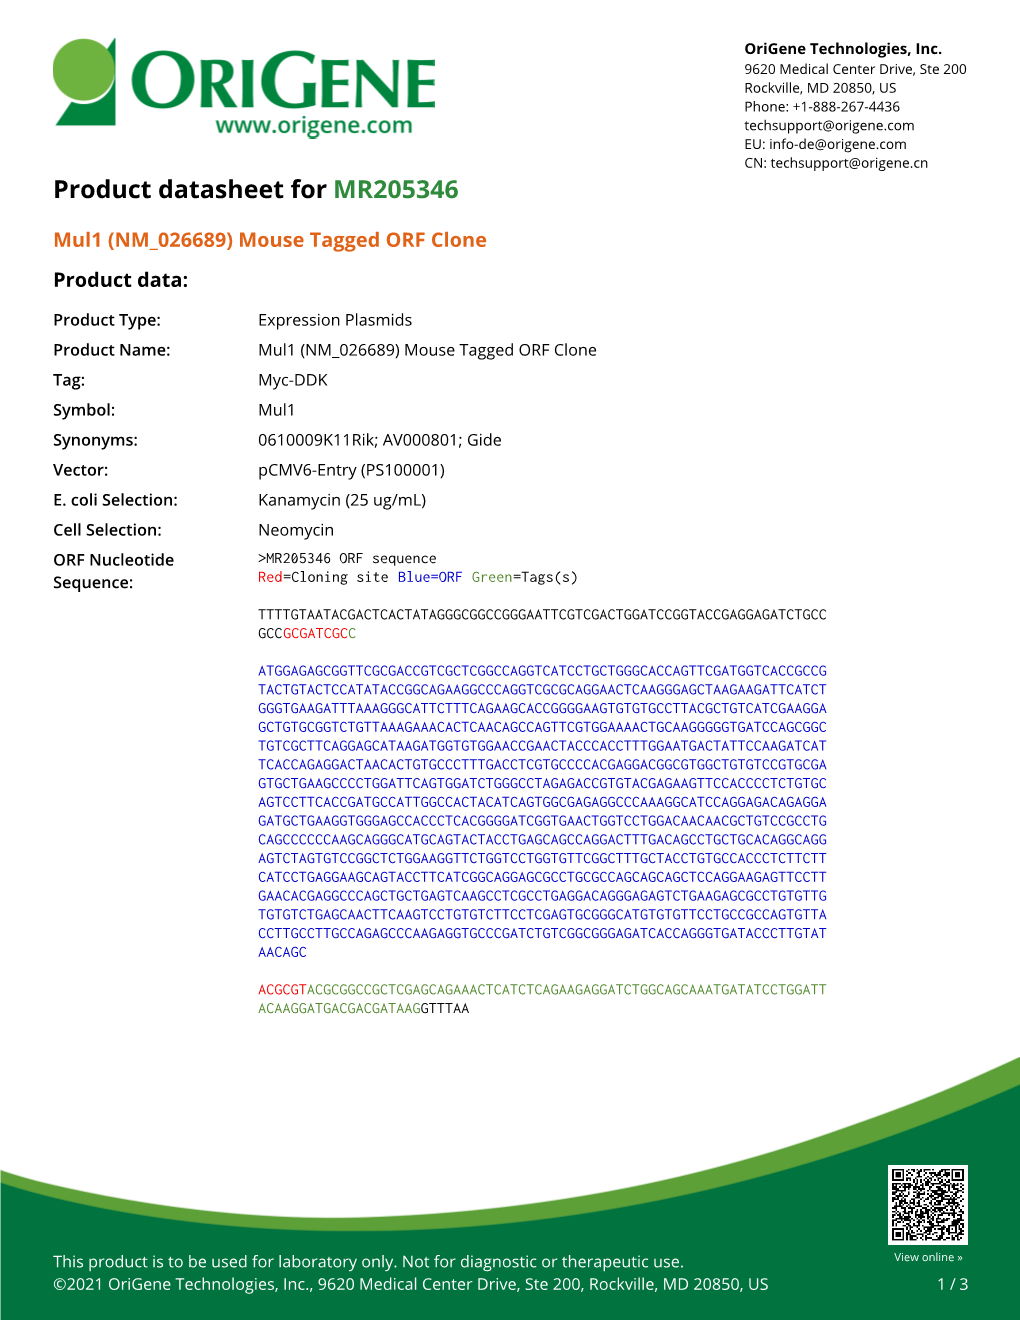 Mul1 (NM 026689) Mouse Tagged ORF Clone – MR205346 | Origene